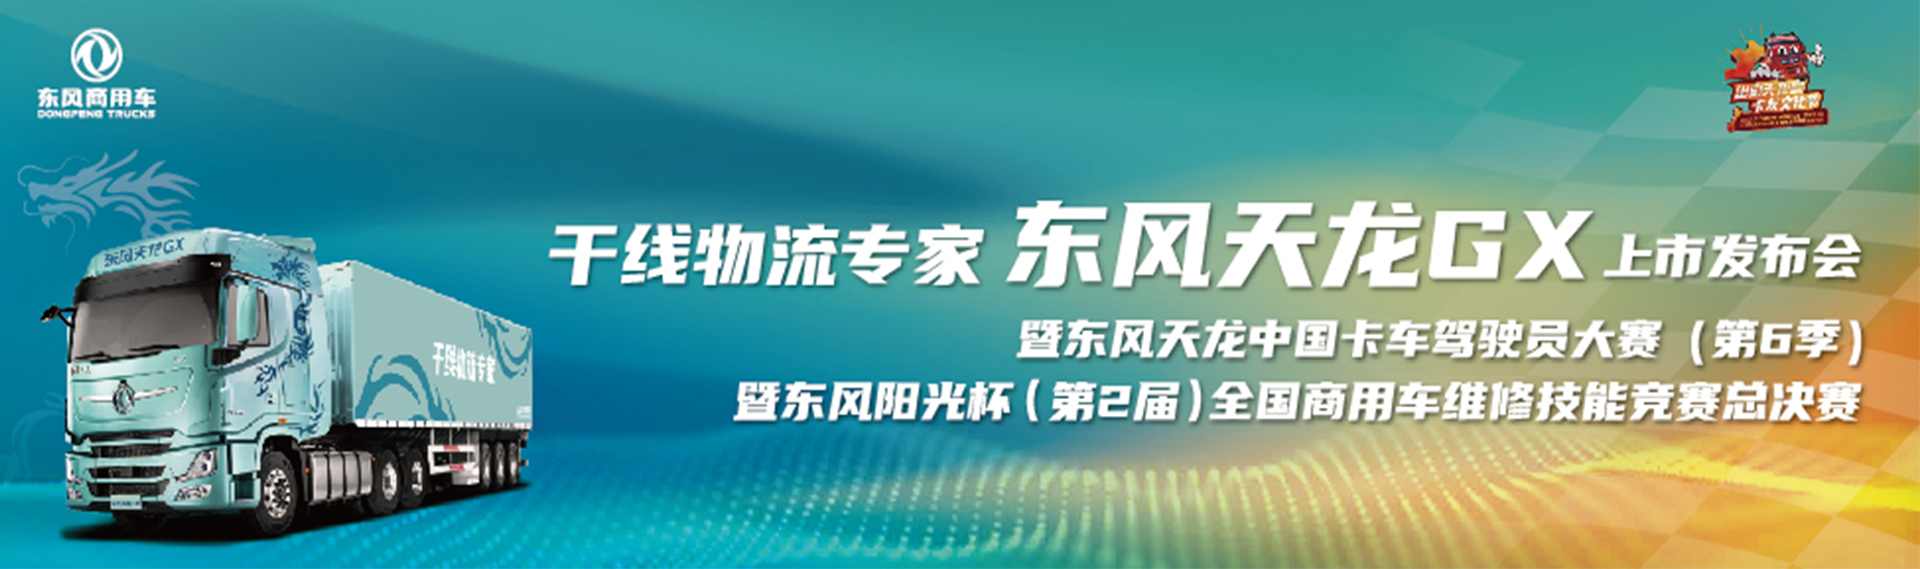 干线物流专家 东风天龙GX 上市发布会暨东风天龙中国卡车驾驶员大赛(第6季) 